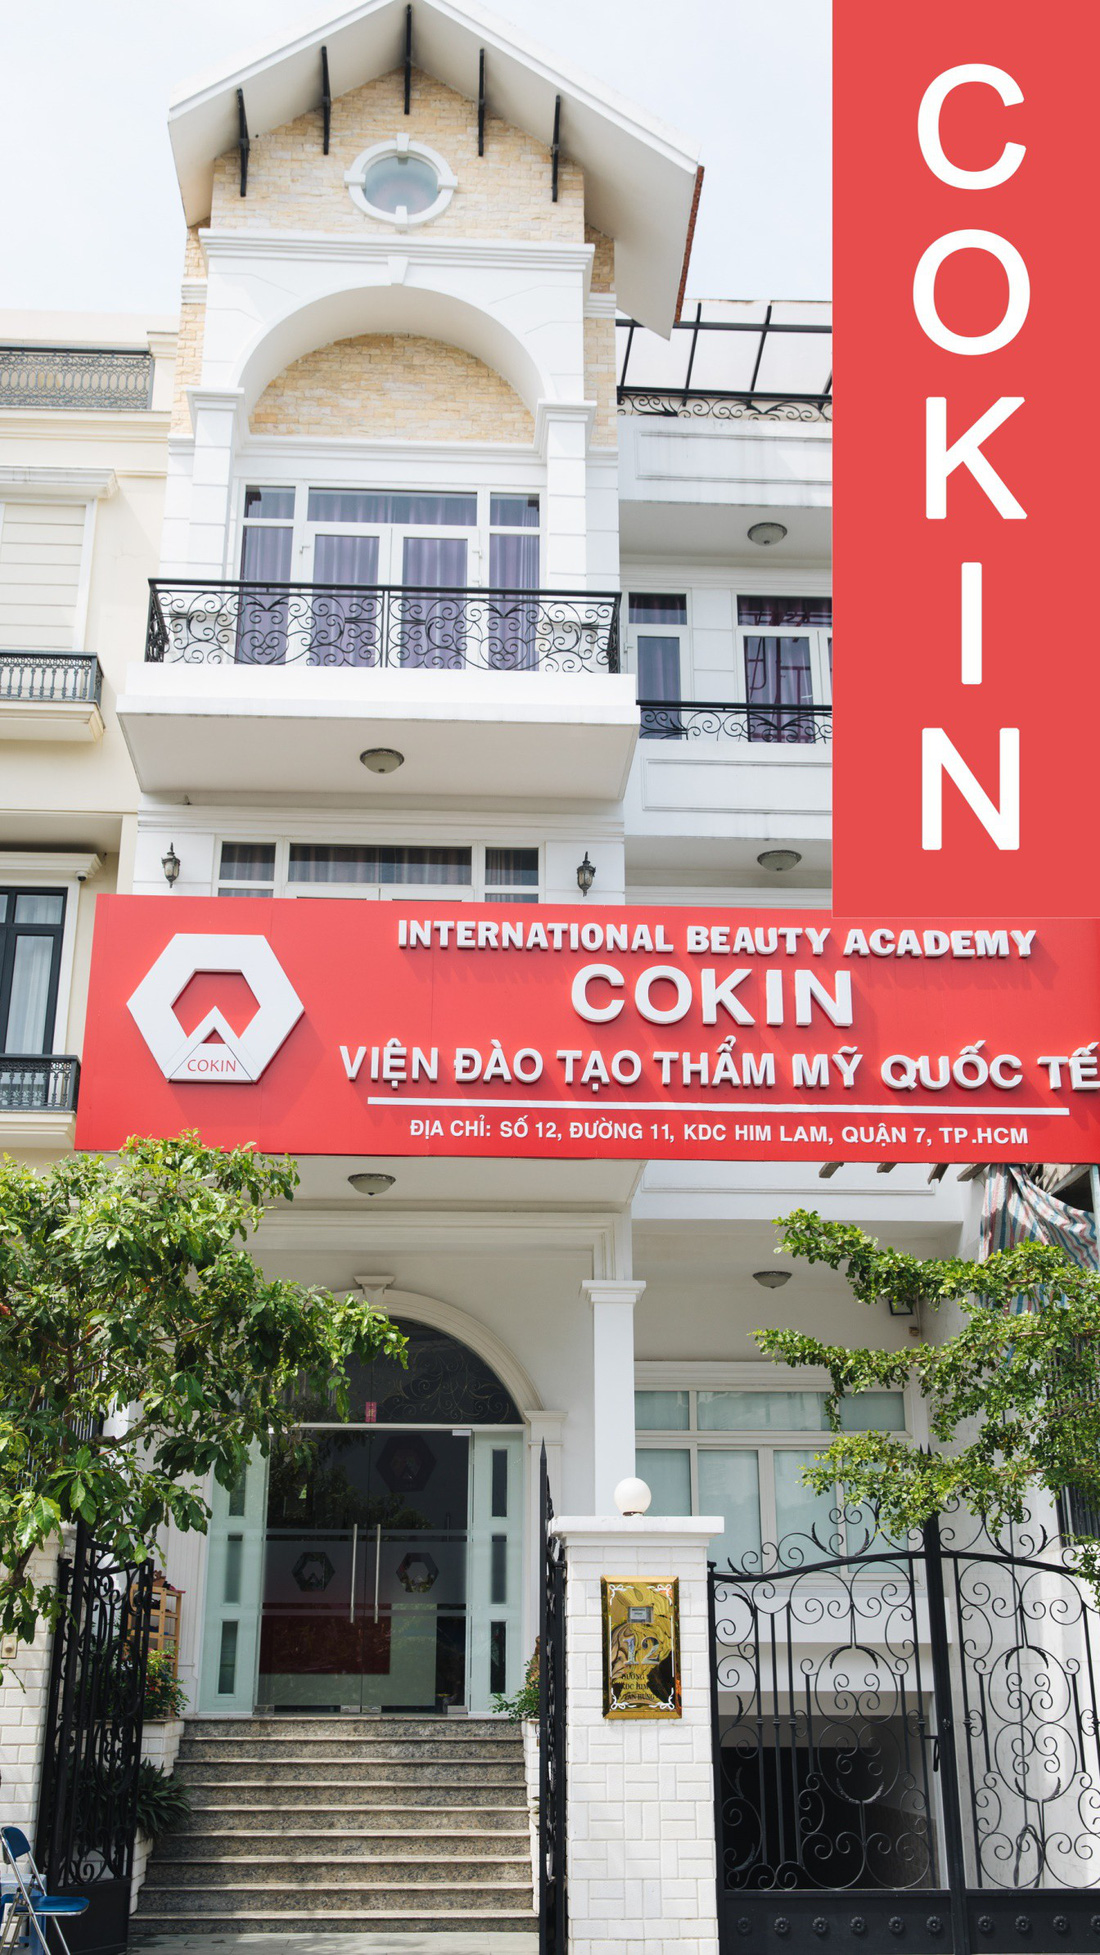 Viện đào tạo Thẩm mỹ Quốc tế Cokin:  Điểm đến tin cậy, trao bằng chất lượng - Ảnh 1.